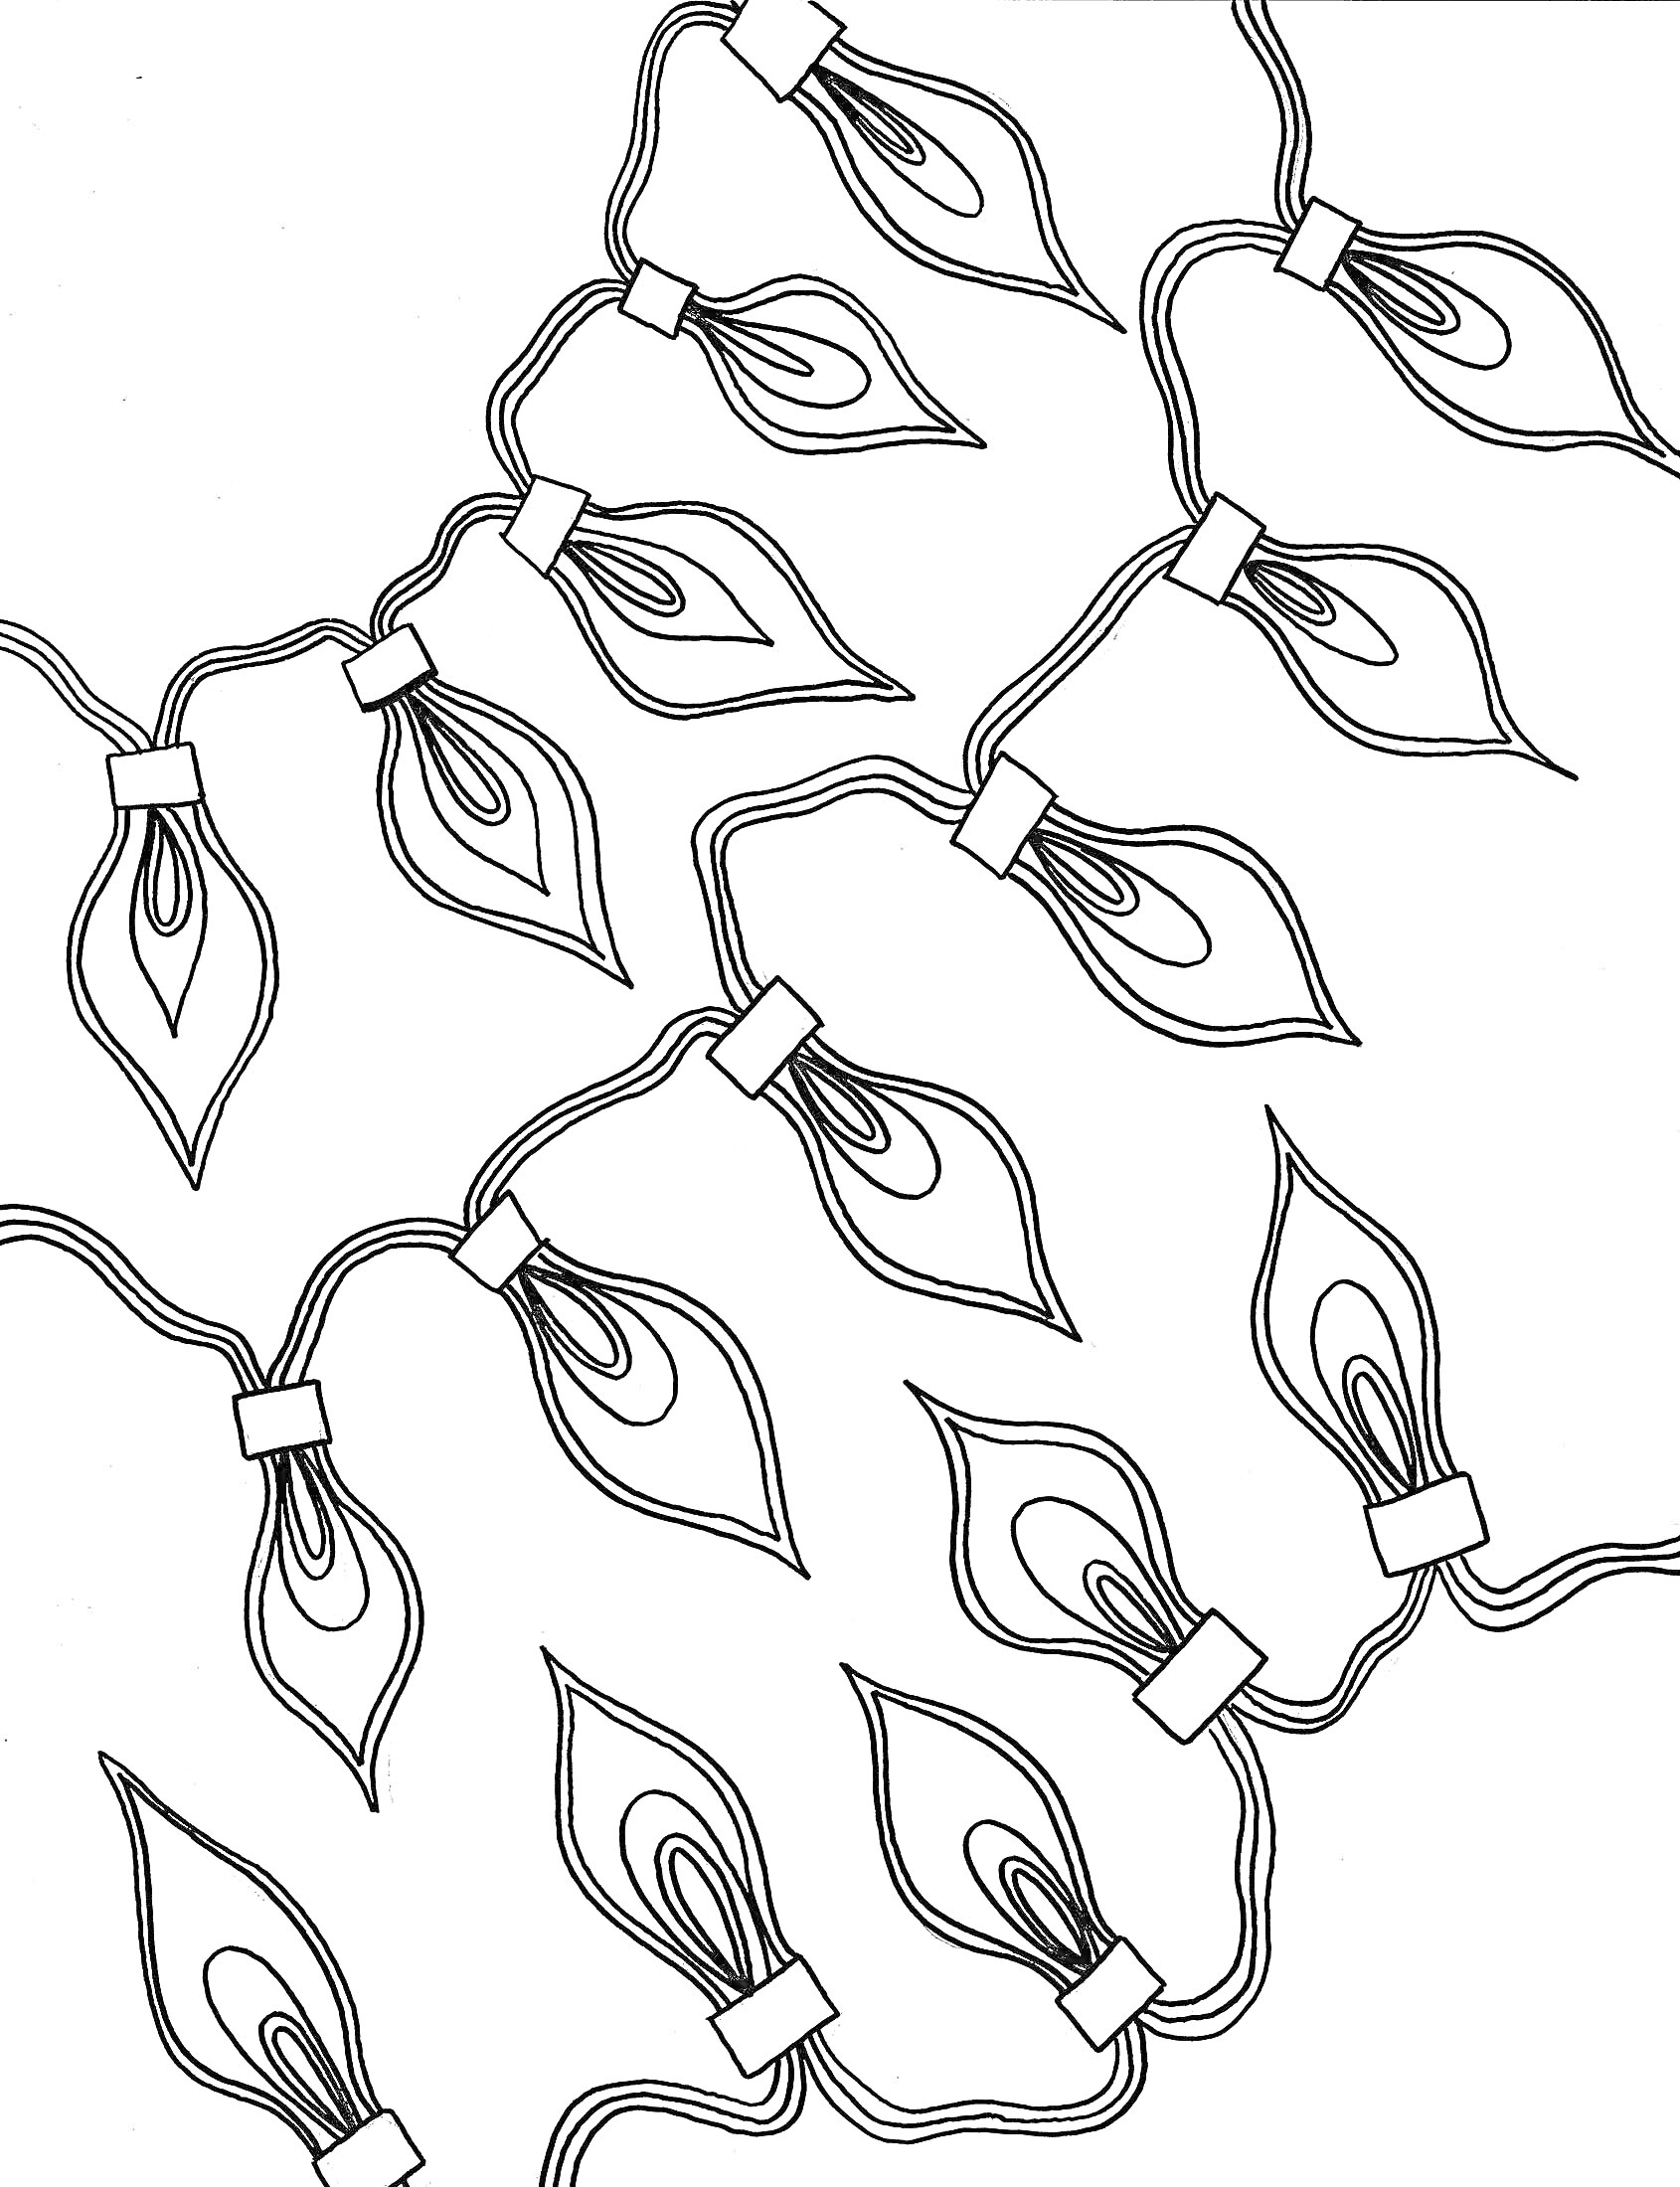 Раскраска Гирлянда с лампочками в виде листьев